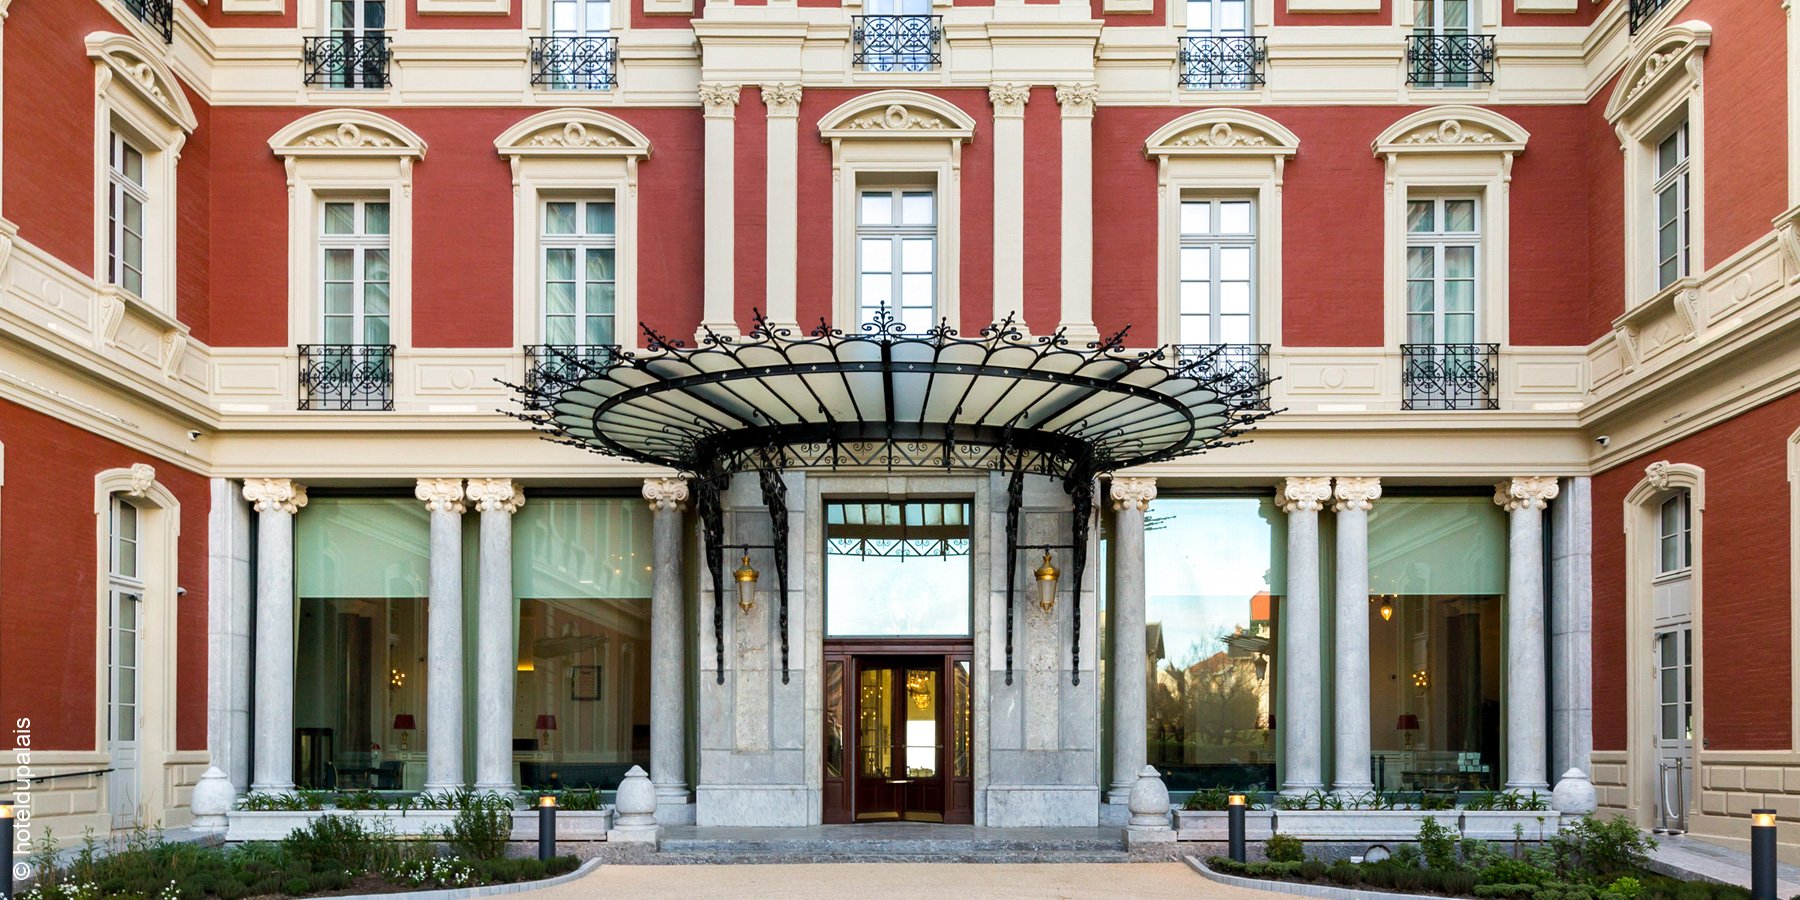 Hôtel du Palais | Biarritz | Hotel Entrance | luxuszeit.com